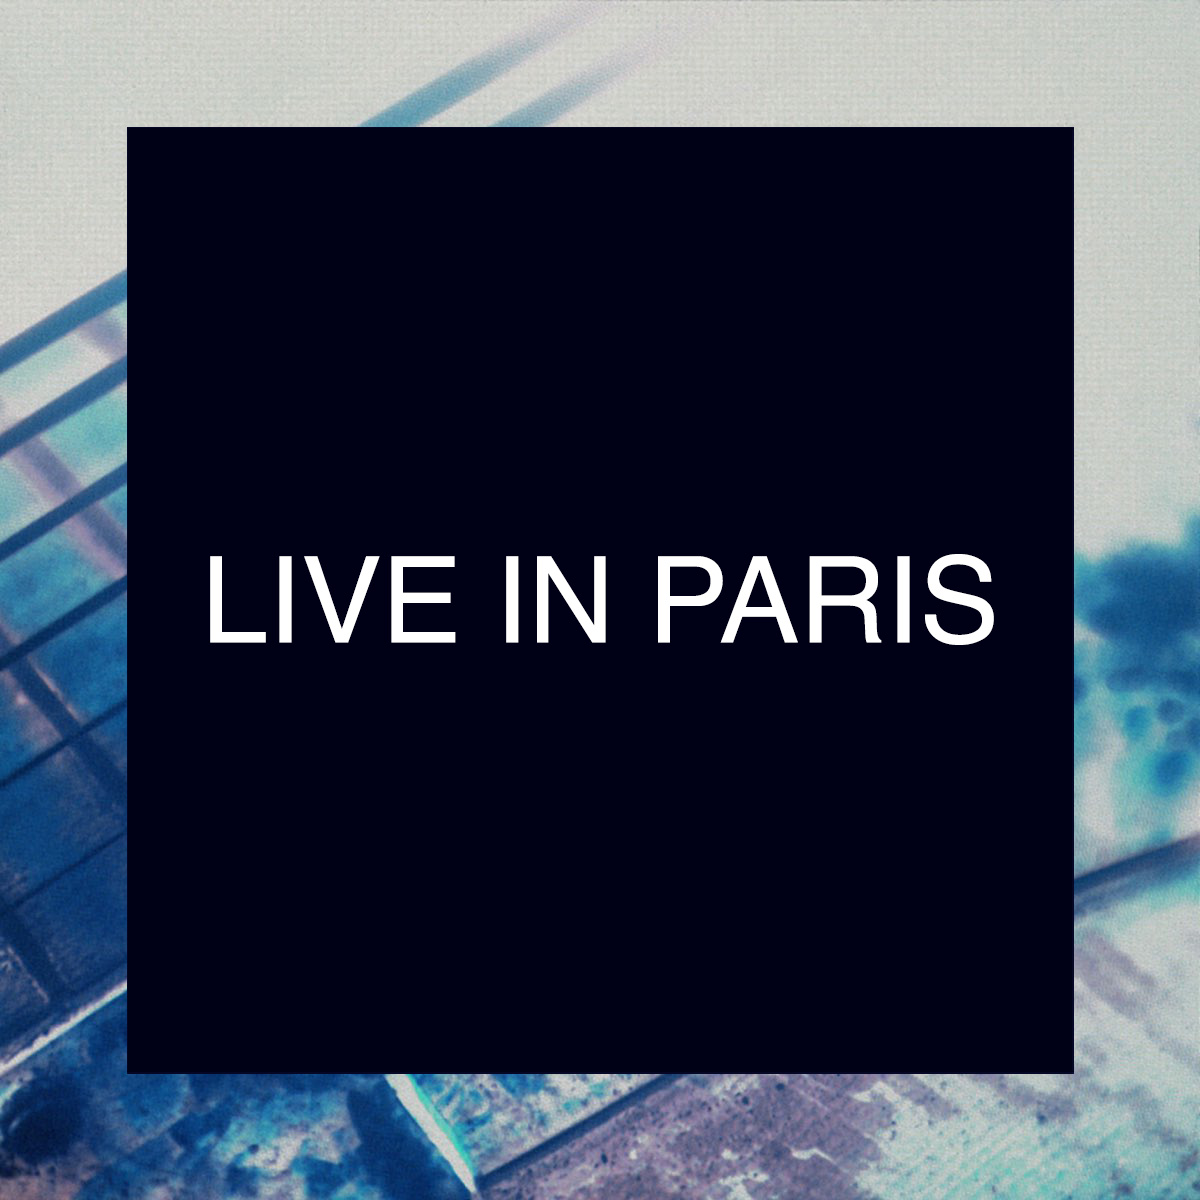 Live In Paris – Une veille de concerts parisiens